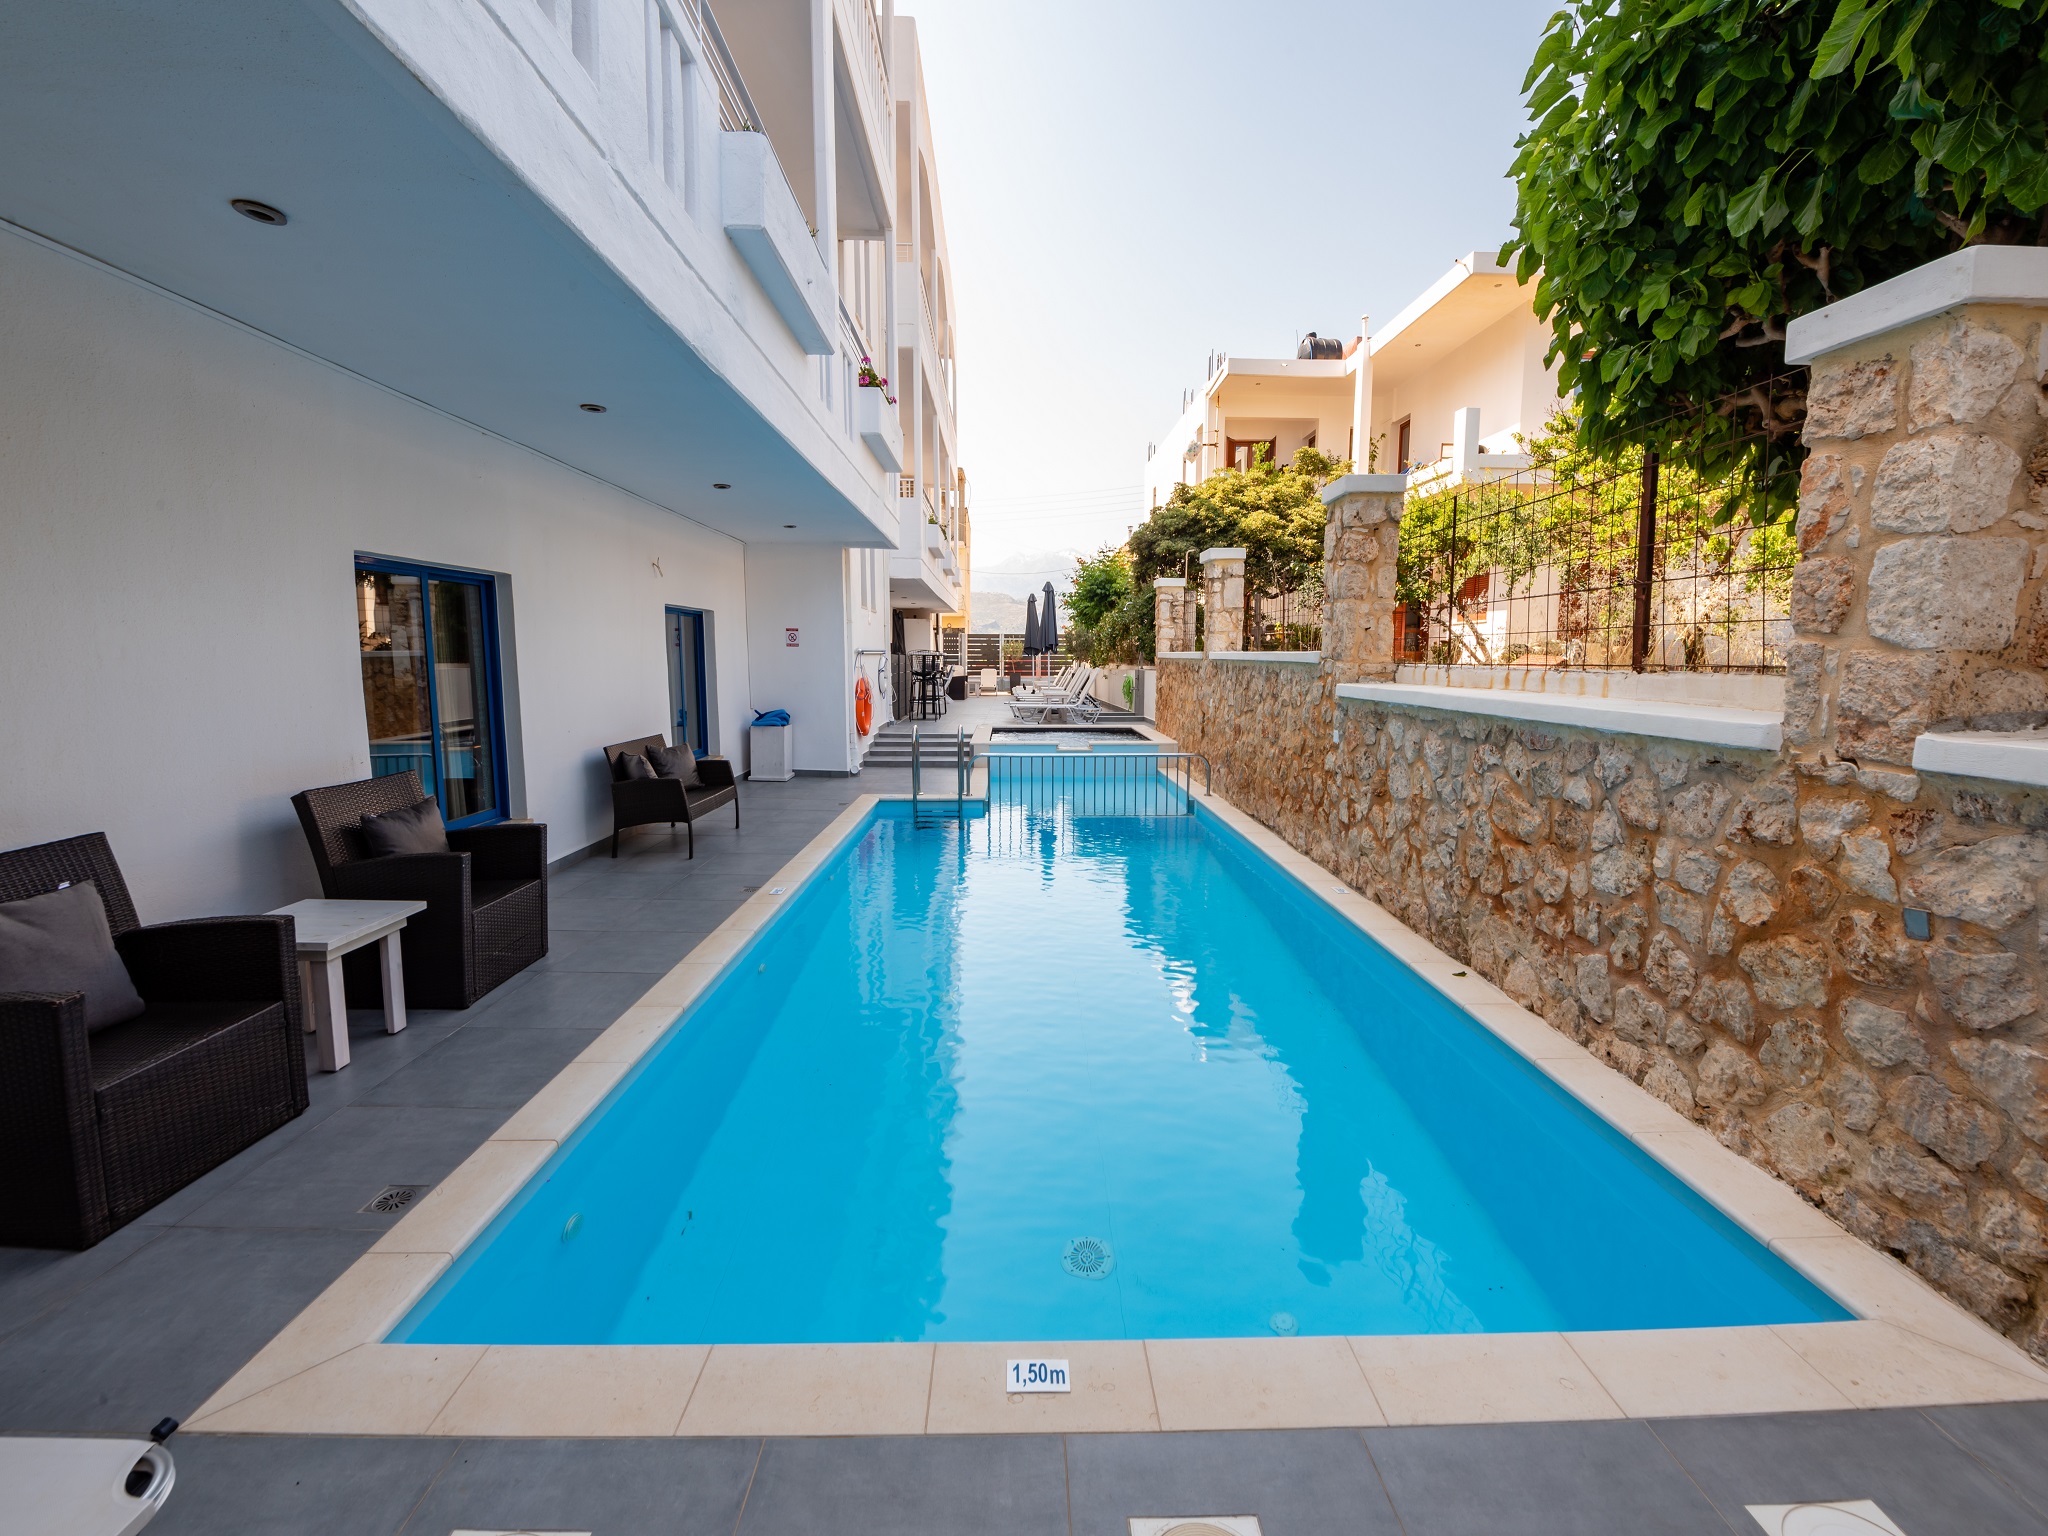 Alexis Hotel - Χανιά, Κρήτη ✦ 3 Ημέρες (2 Διανυκτερεύσεις) ✦ 2 άτομα ✦ 1 ✦ 05/04/2022 έως 30/09/2022 ✦ Κοντά στην Παραλία!